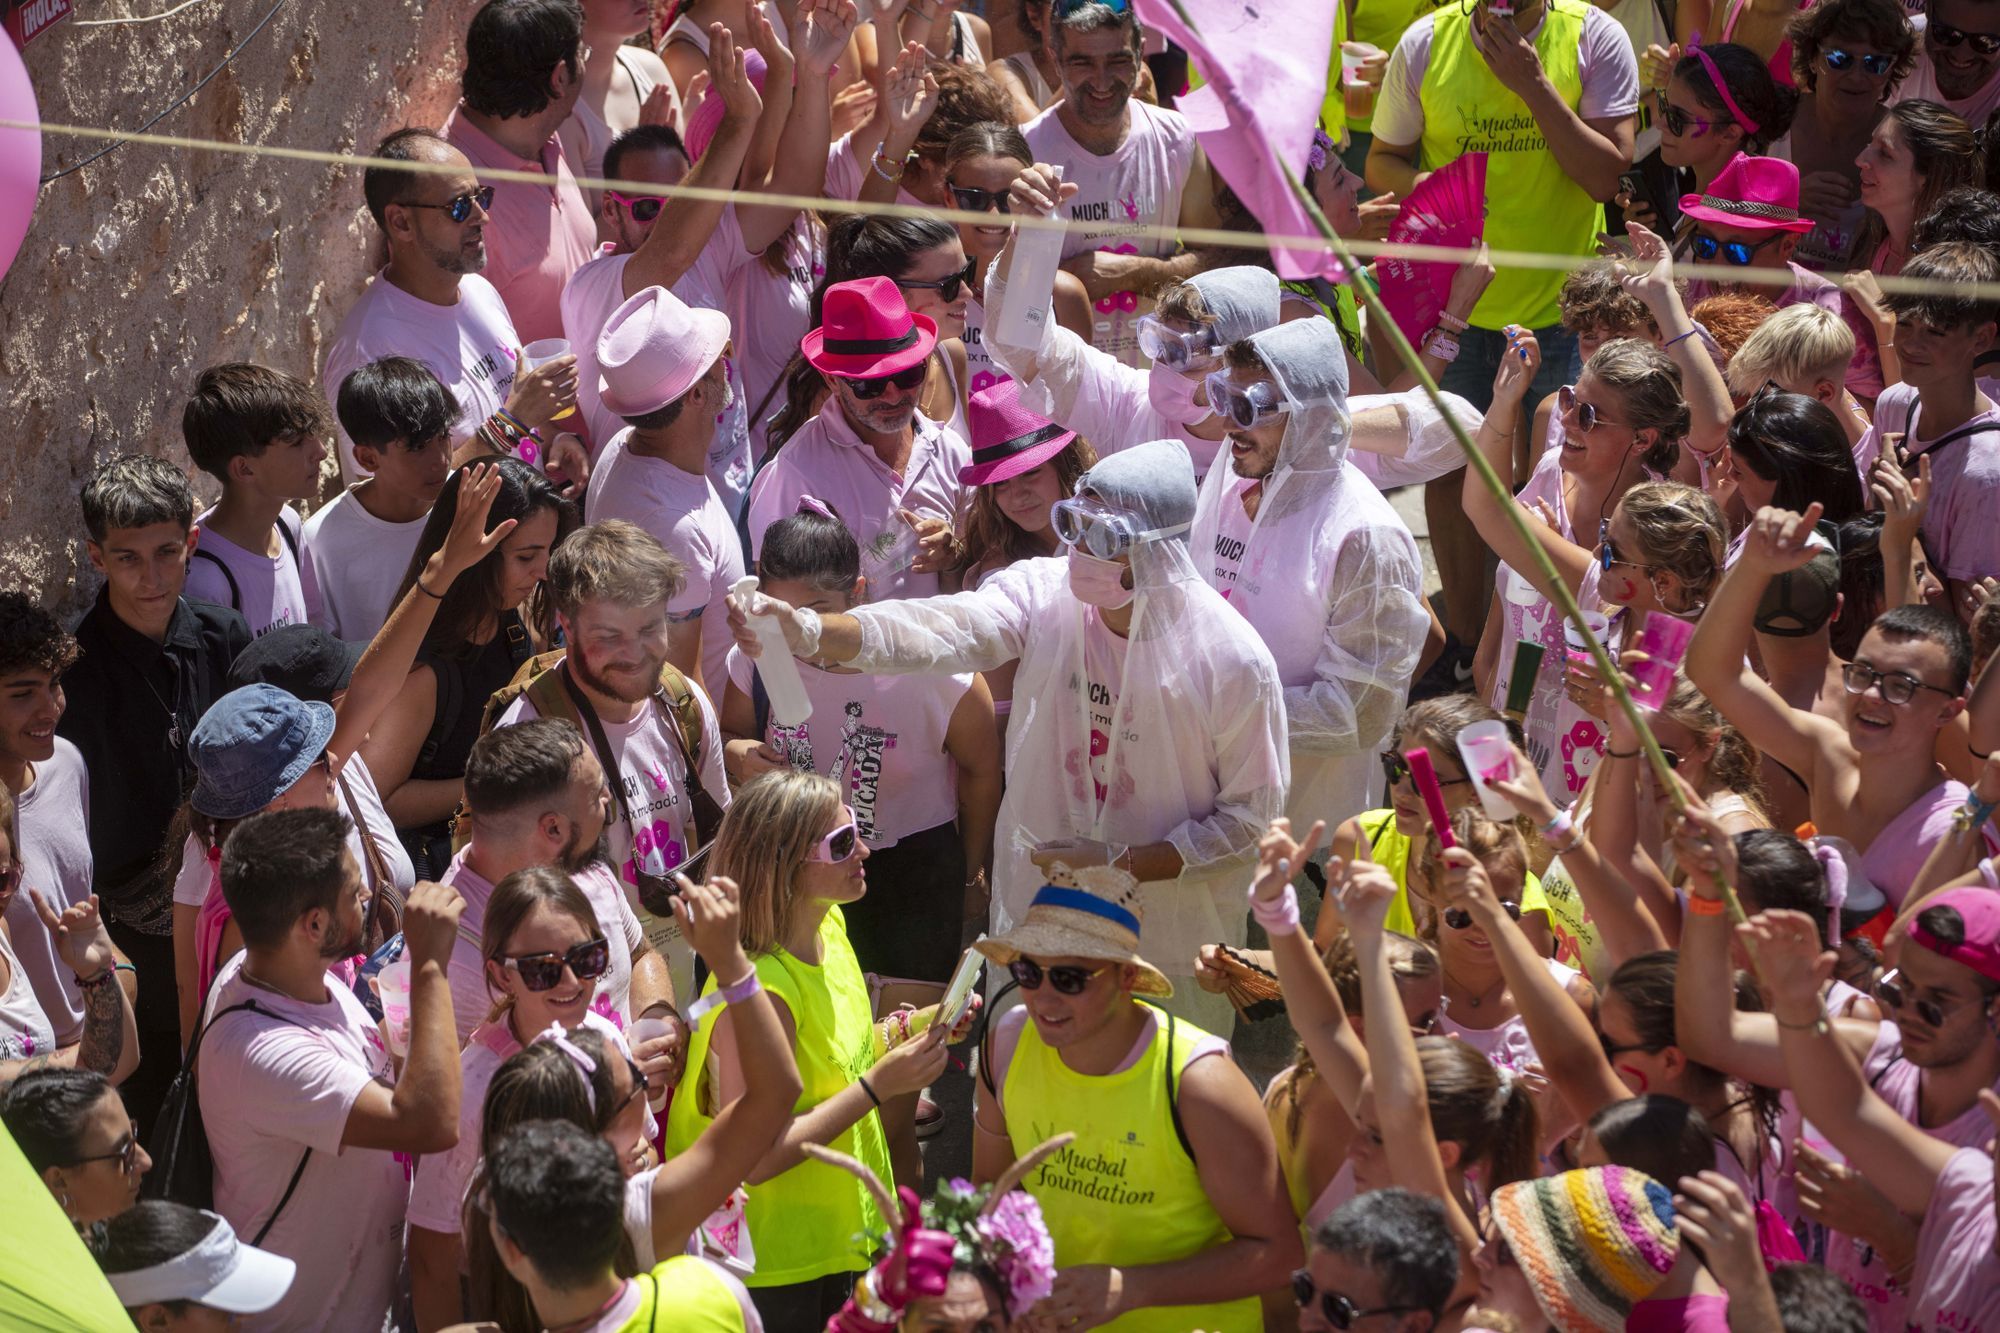 Der "Much" ist wieder da - so sieht es beim verrücktesten Dorffest von Mallorca aus